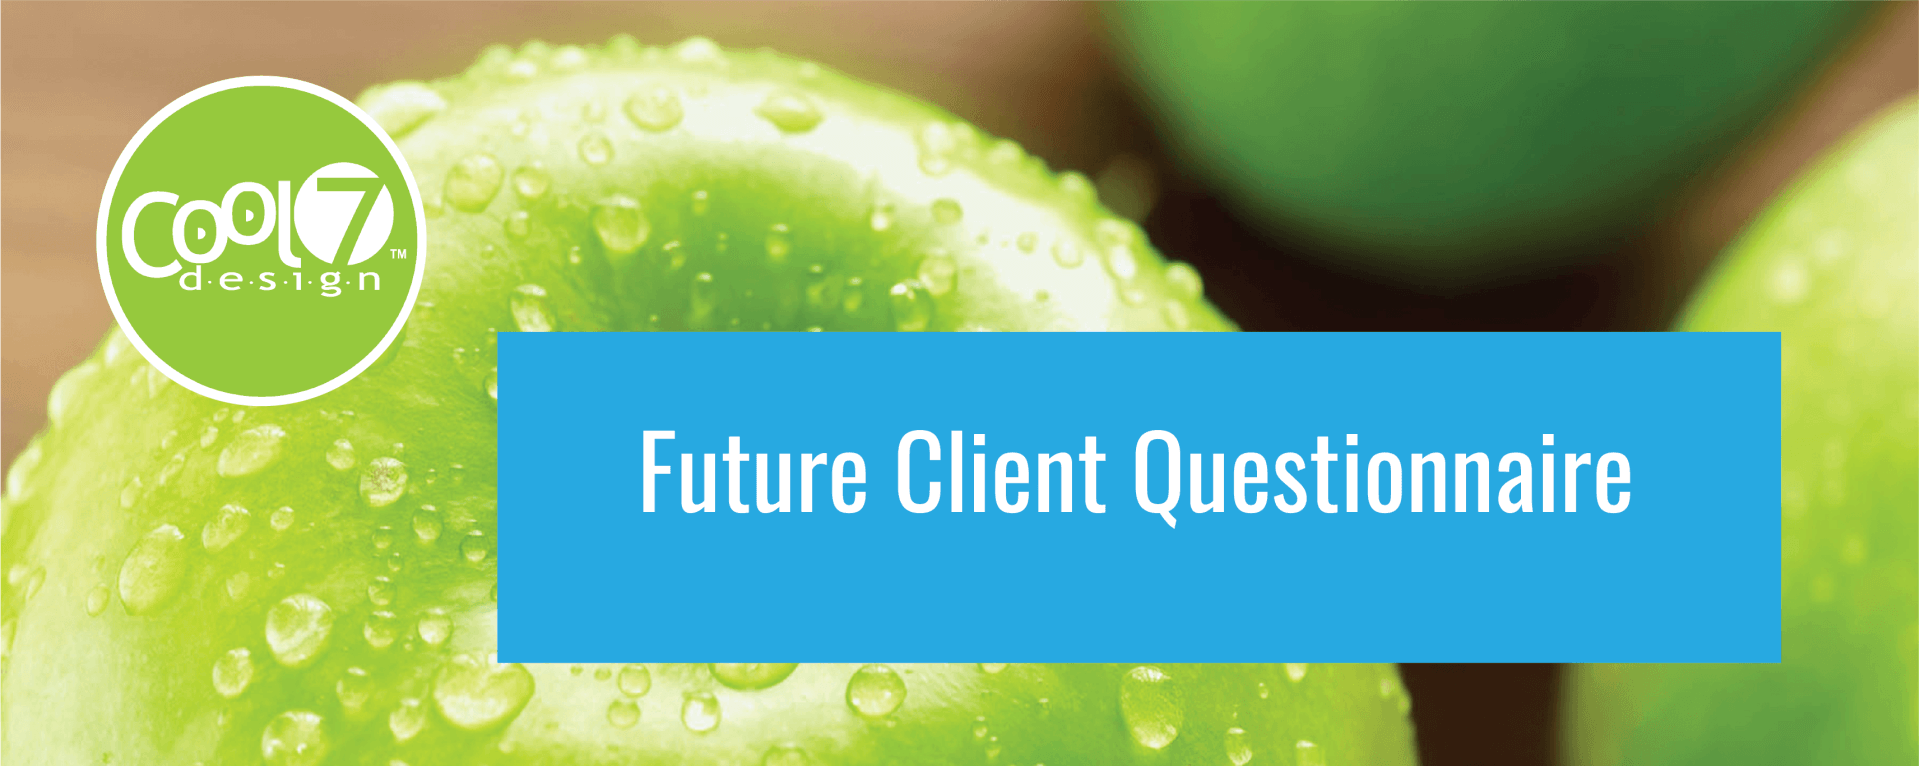 Future Client Questionnaire photo